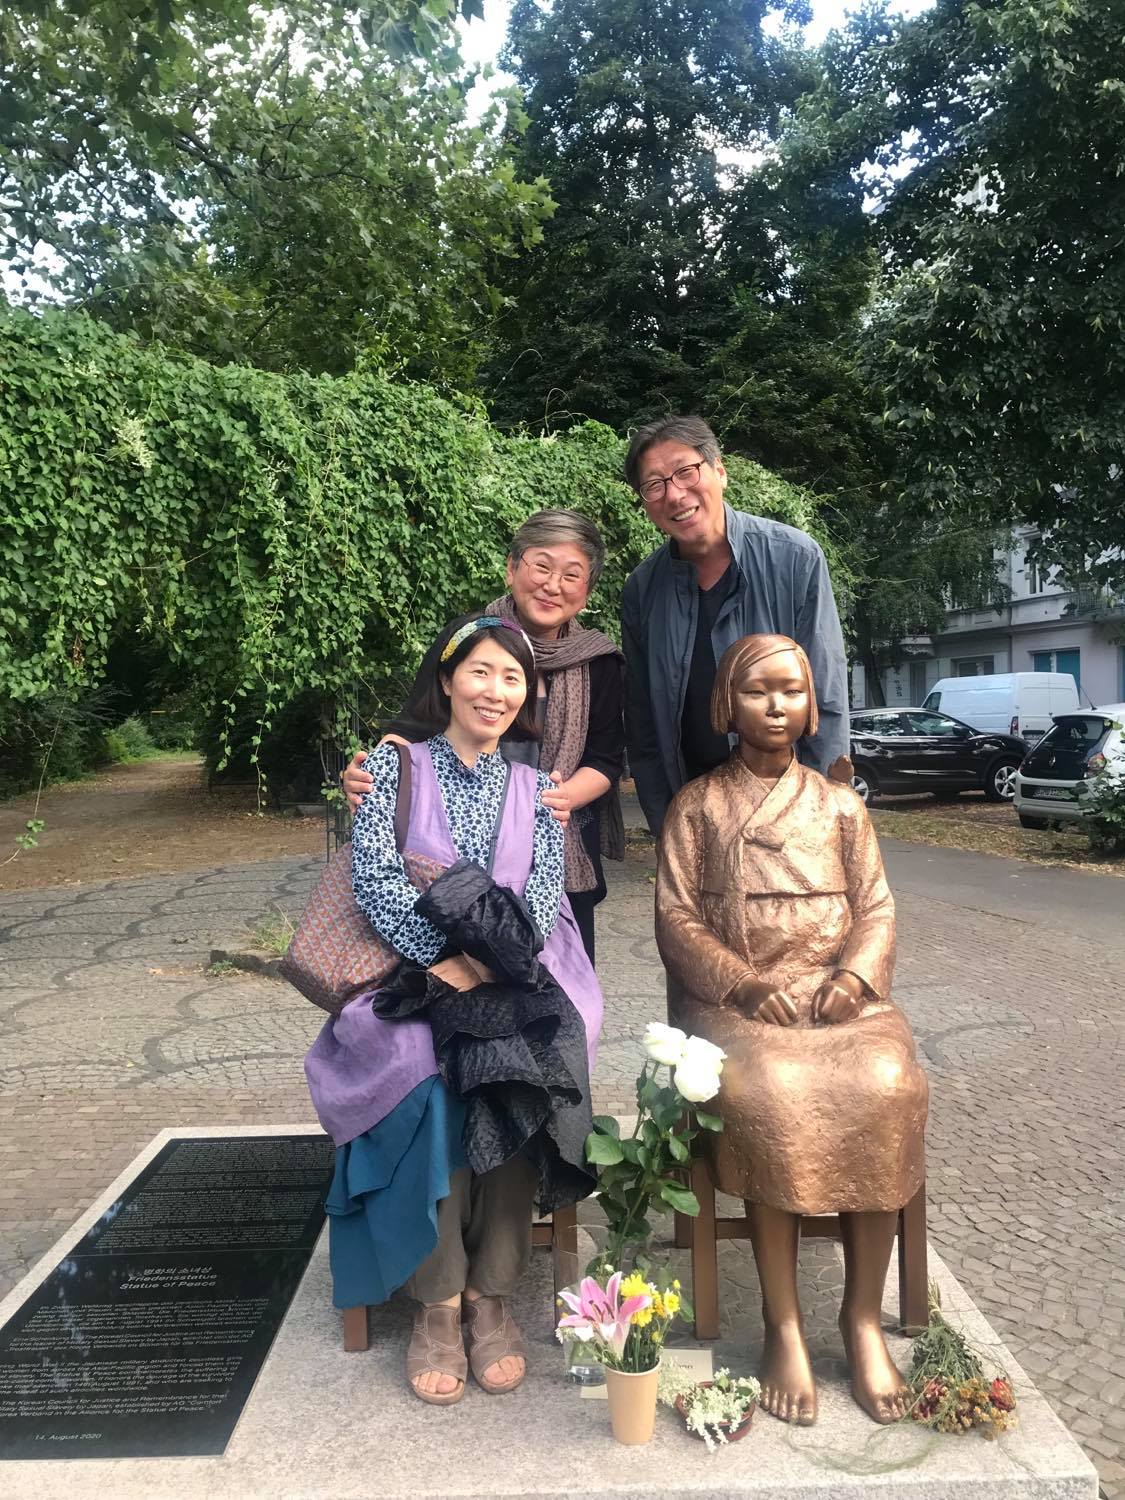 Die Friedensstatue in gold hat die Gestalt eines jungen Mädchens. Links neben ihr sitzt eine Frau. Hinter den beiden stehen zwei weitere Menschen. Im Hintergrund fängt der Park an.